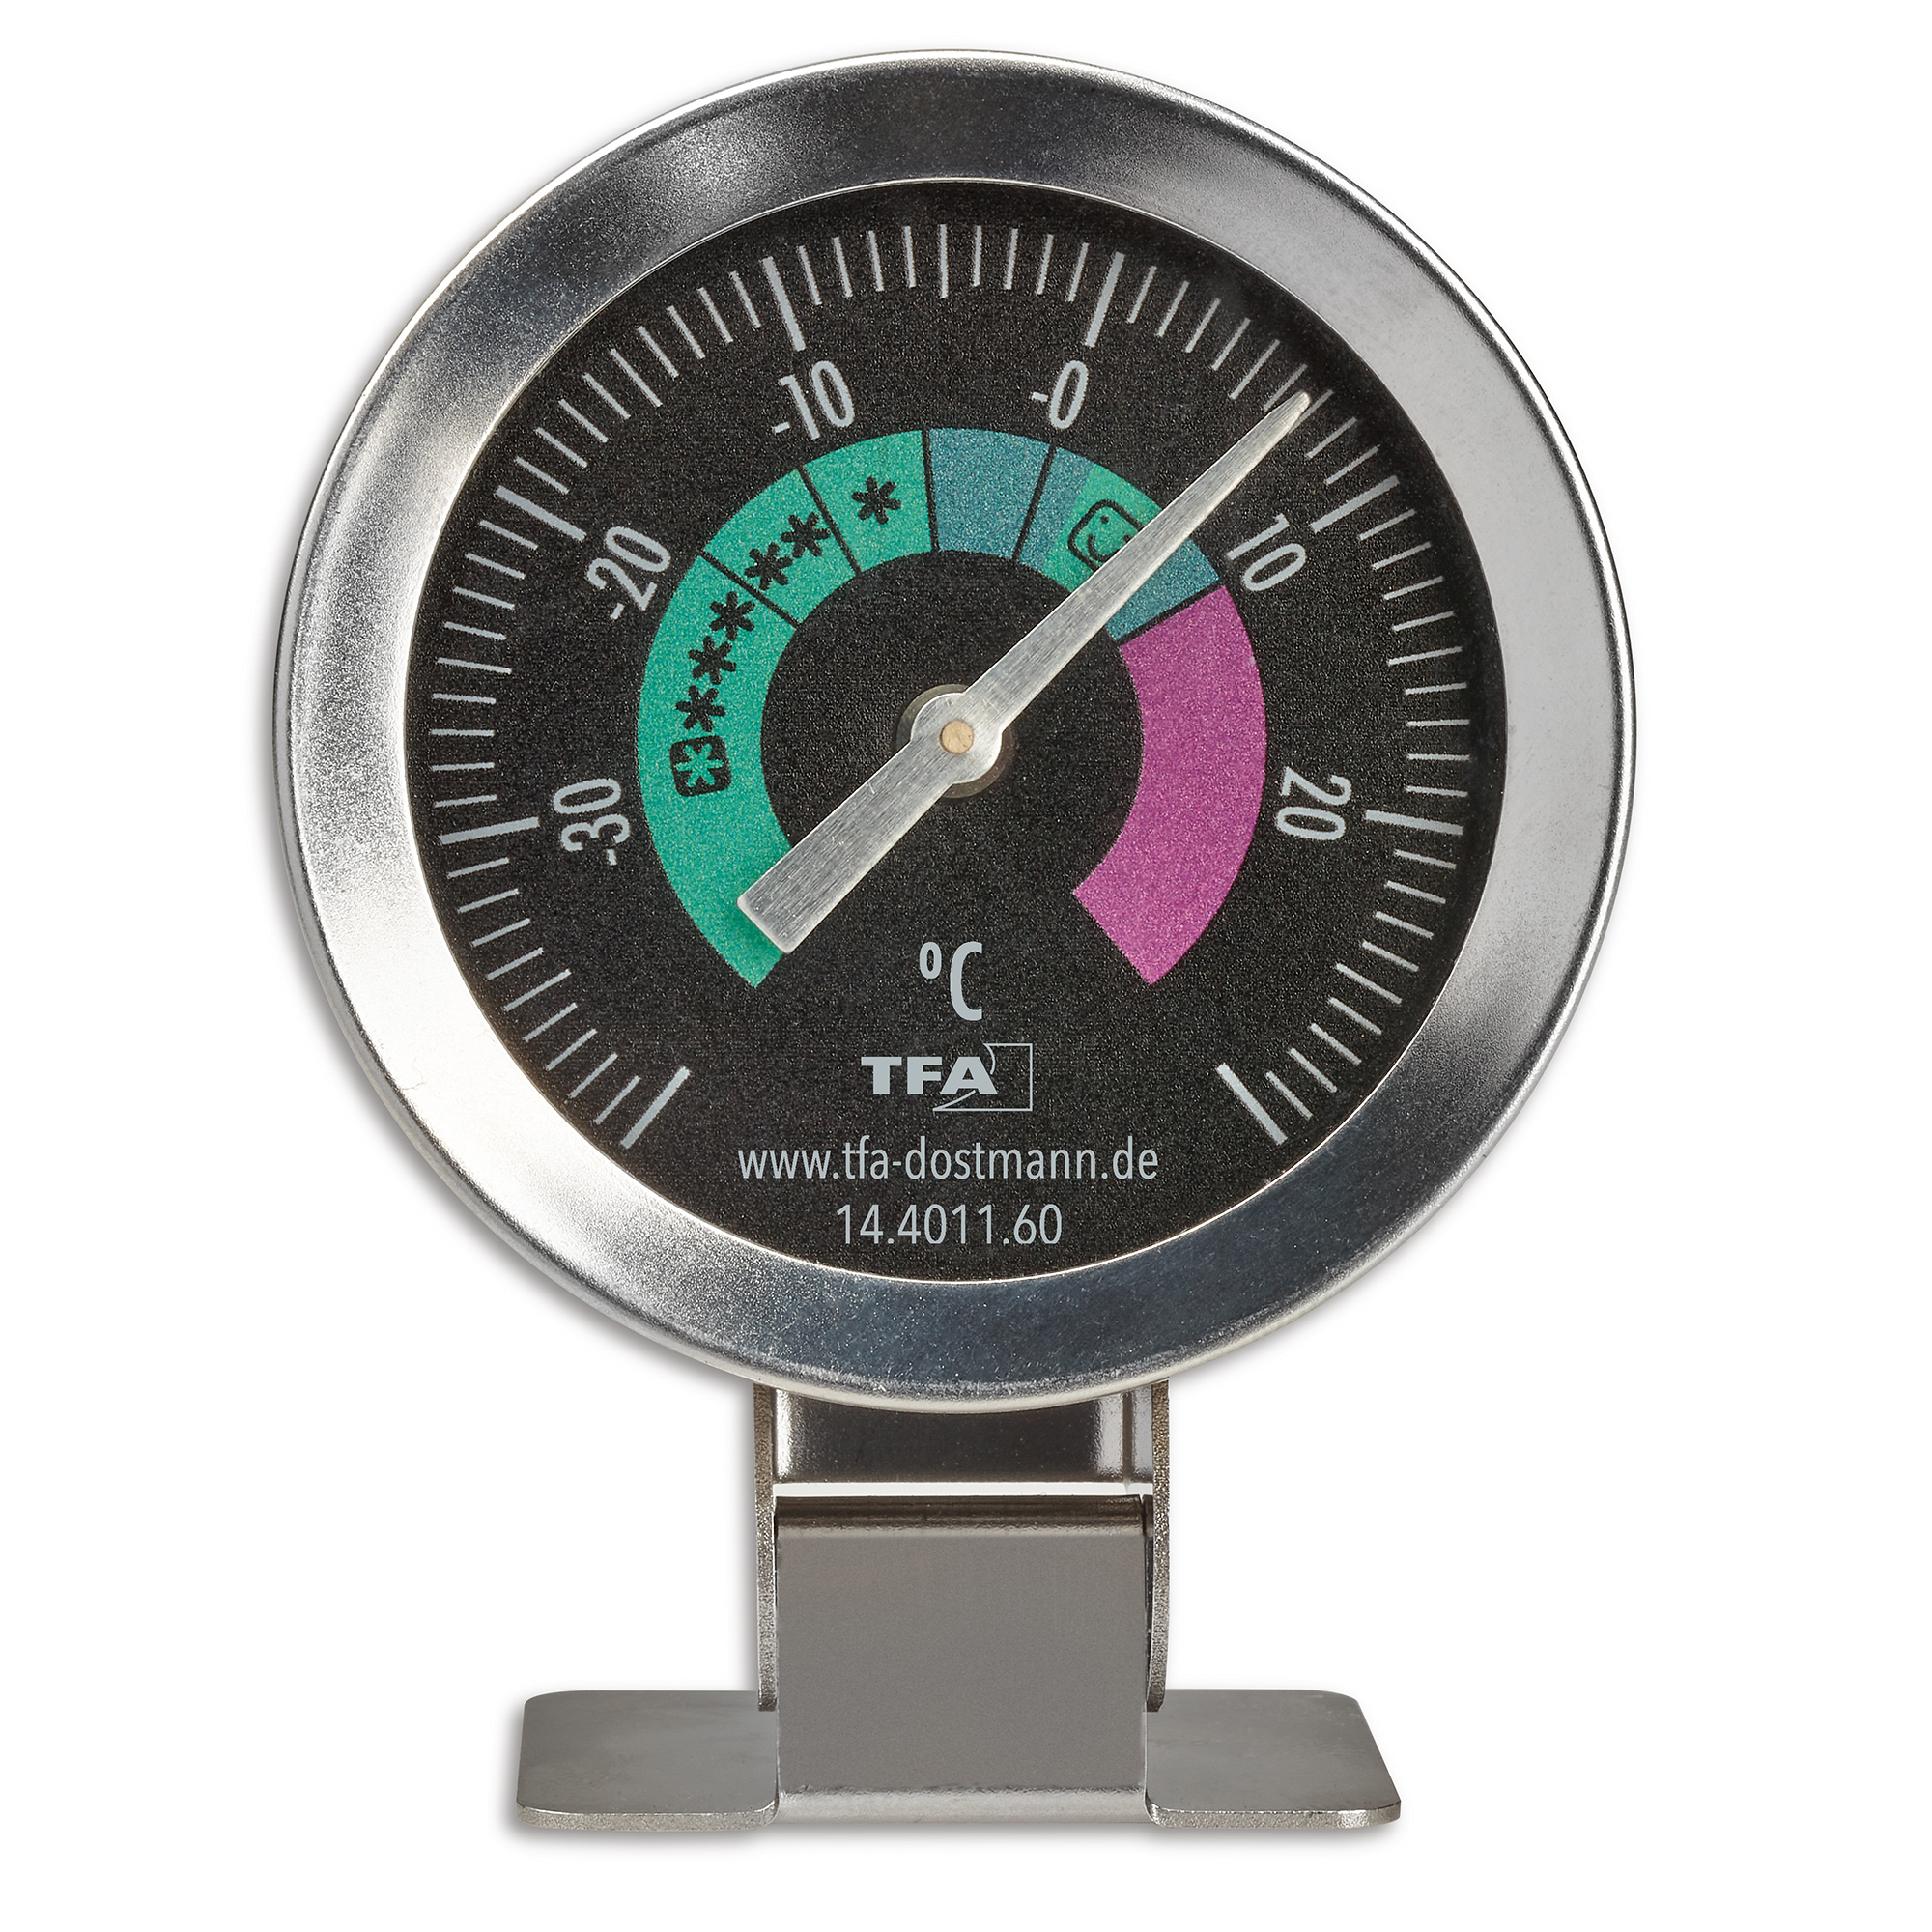 TFA Dostmann Analoges Kühlthermometer klein zur Kontrolle NEU OVP handlich 